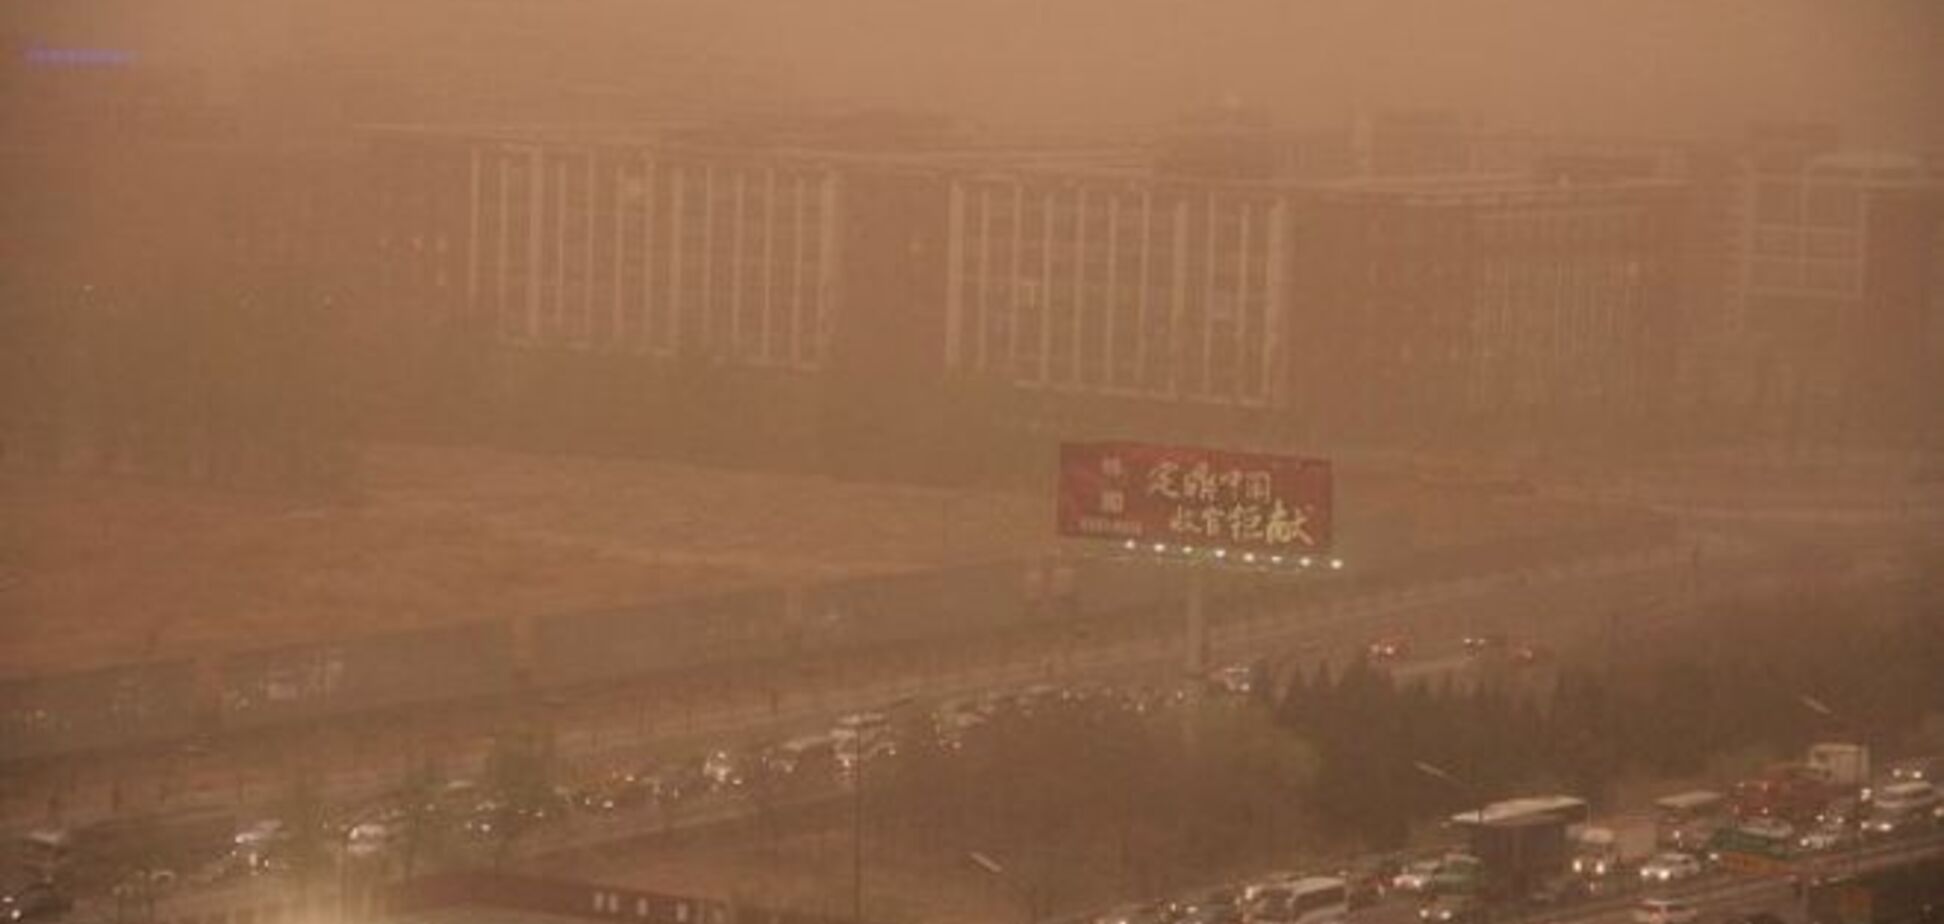 Пекин накрыла желтая непроглядная пелена: фото мощнейшей пыльной бури